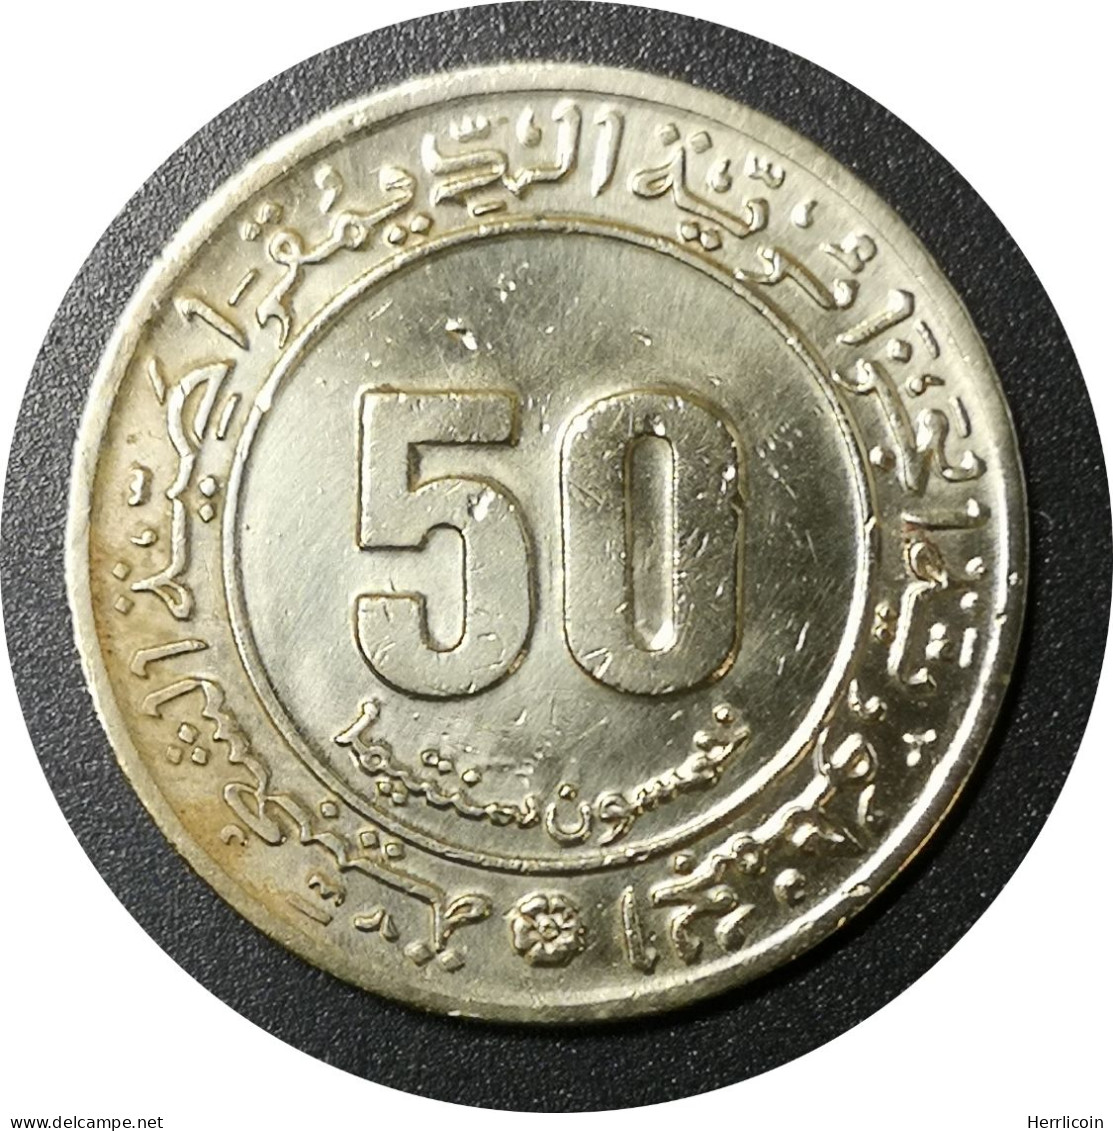 Monnaie Algérie - 1975 - 50 Centimes - Algérie